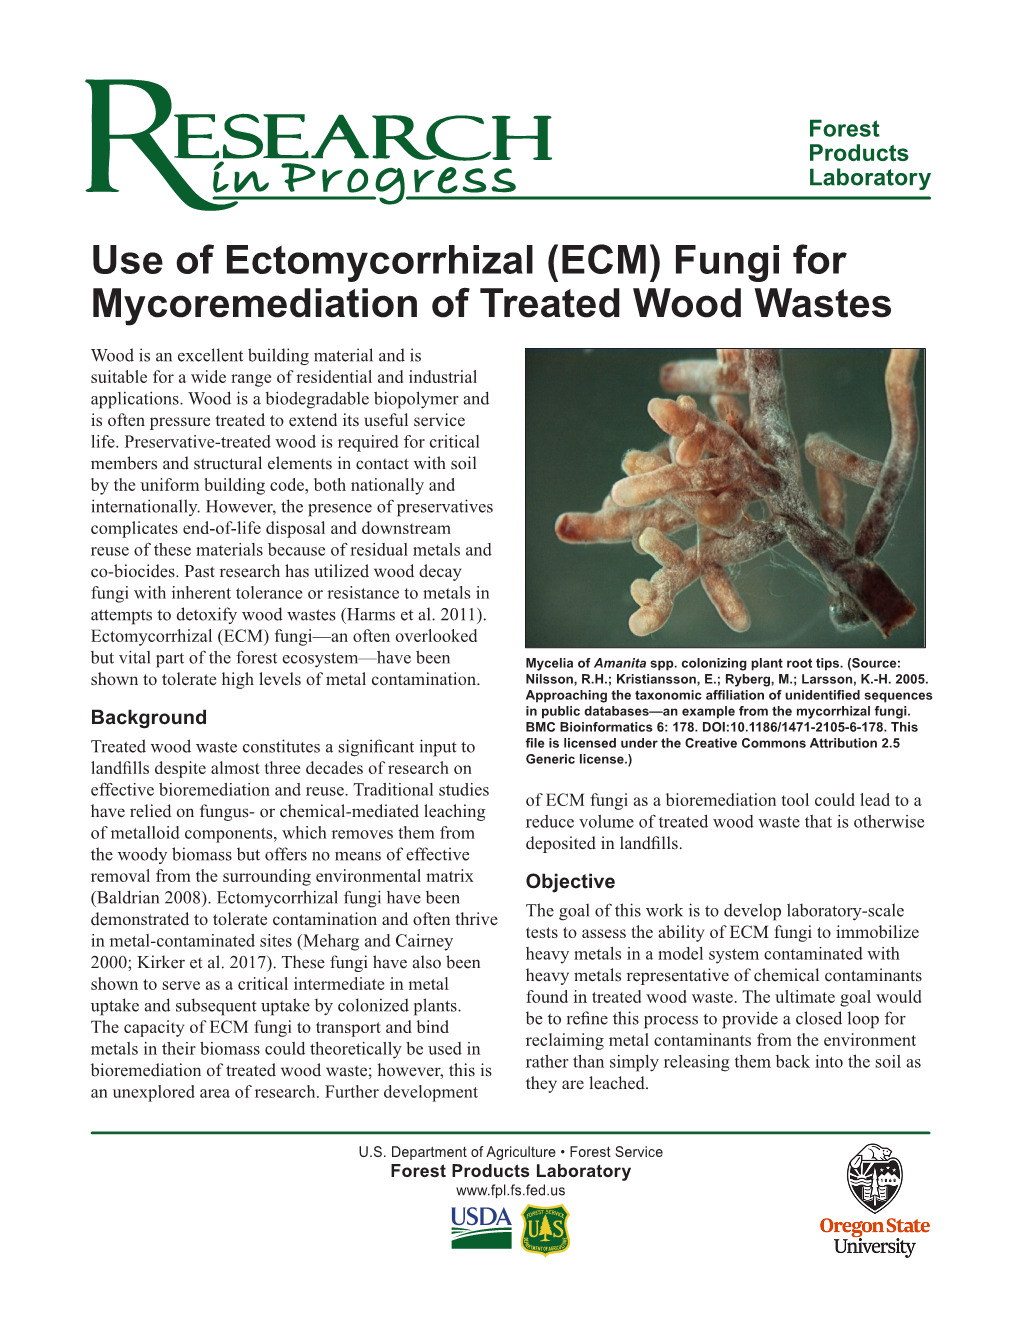 (ECM) Fungi for Mycoremediation of Treated Wood Wastes